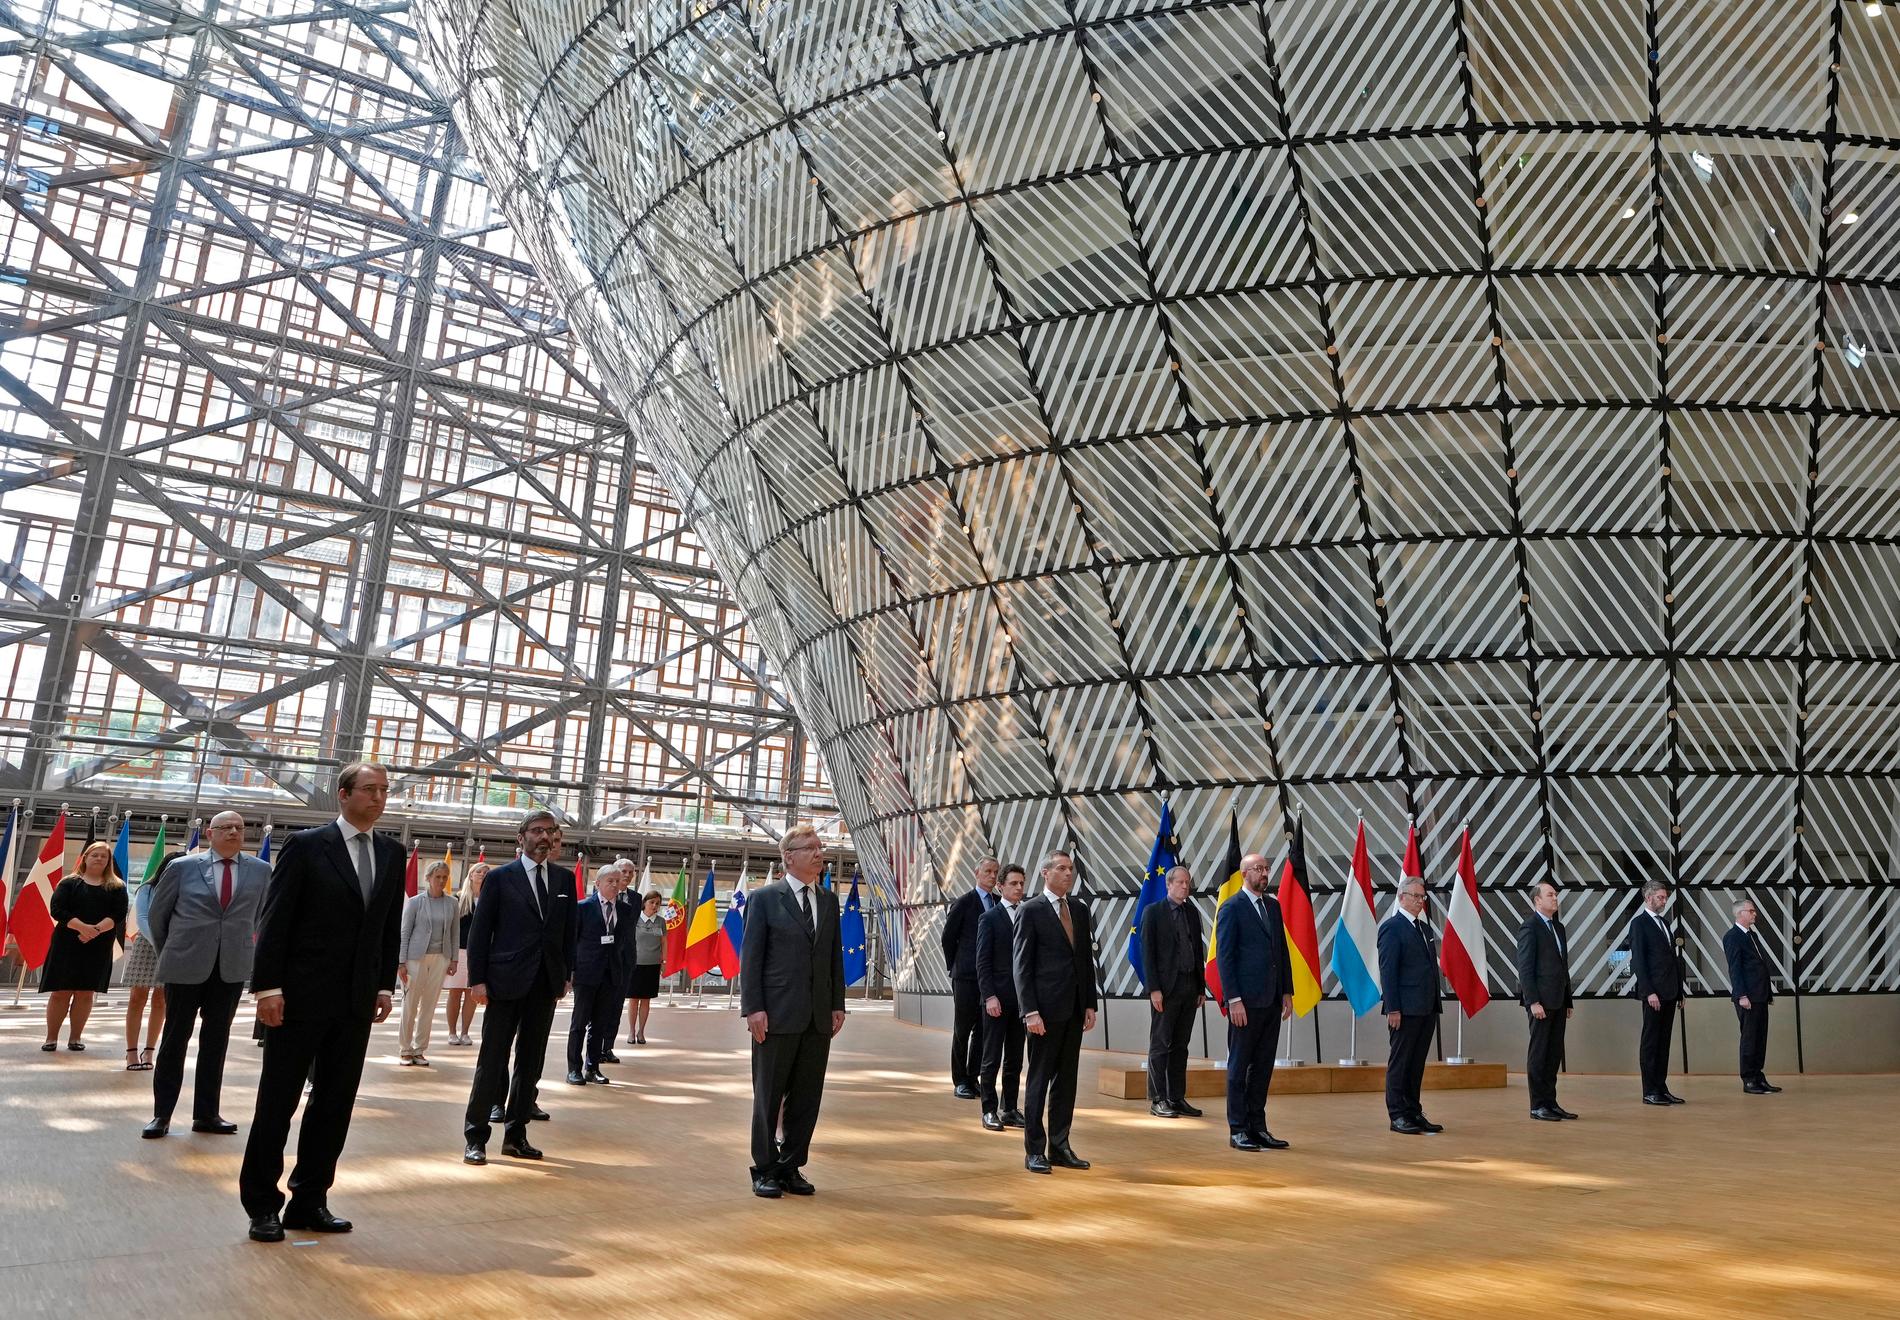 EU:s rådsordförande Charles Michel (i mitten i främsta raden) hedrar översvämningsoffren i Belgien tillsammans med ambassadörer från EU:s medlemsländer i Bryssel.